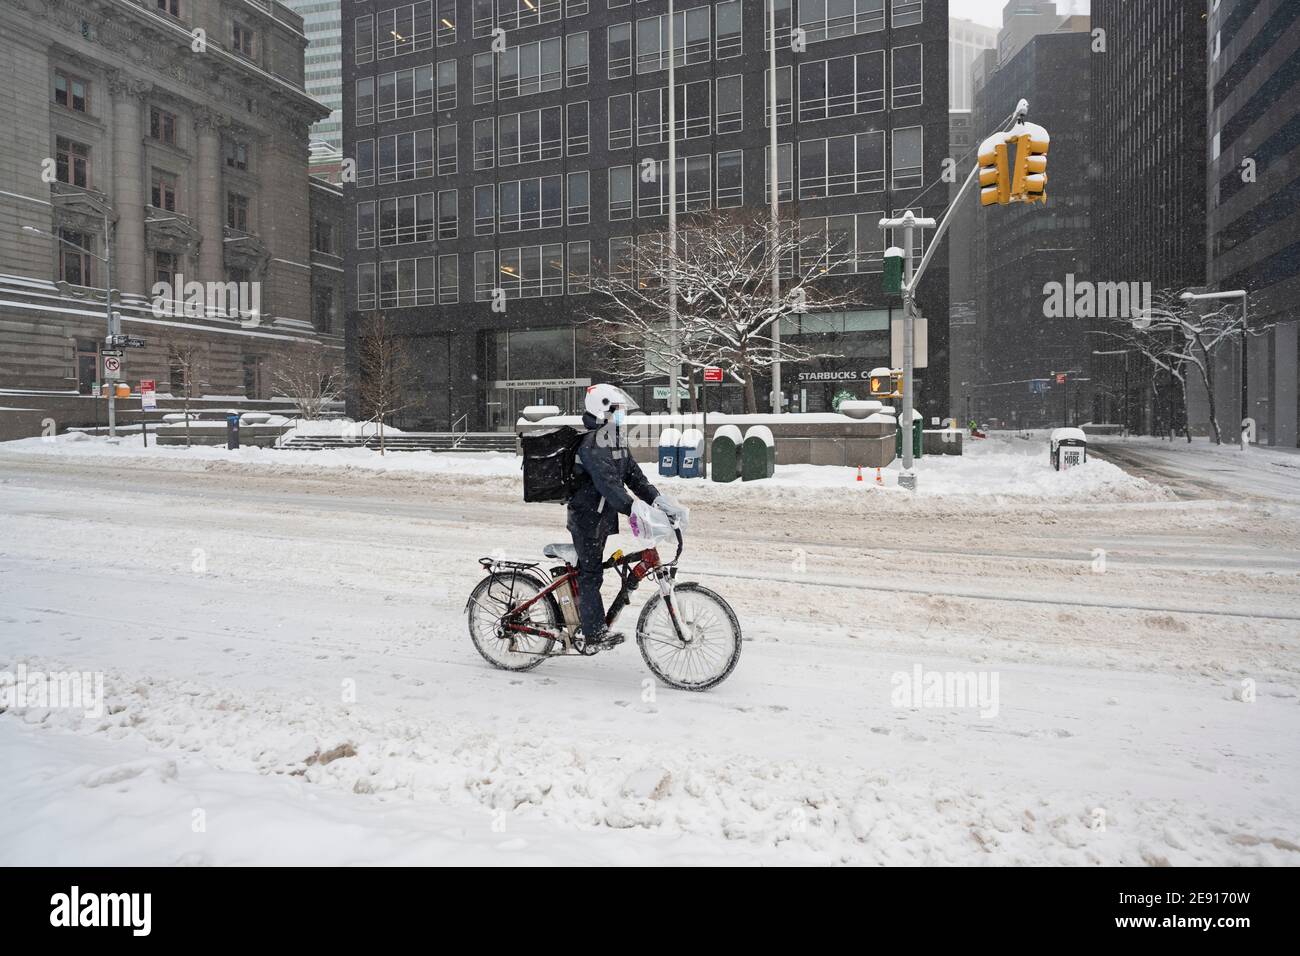 New York, États-Unis. 1 février 2021 un employé de livraison de vélos traverse la neige dans les rues vides de Lower Manhattan pendant la tempête hivernale majeure sur la côte est des États-Unis crédit: Joseph Reid/Alay Live News Banque D'Images